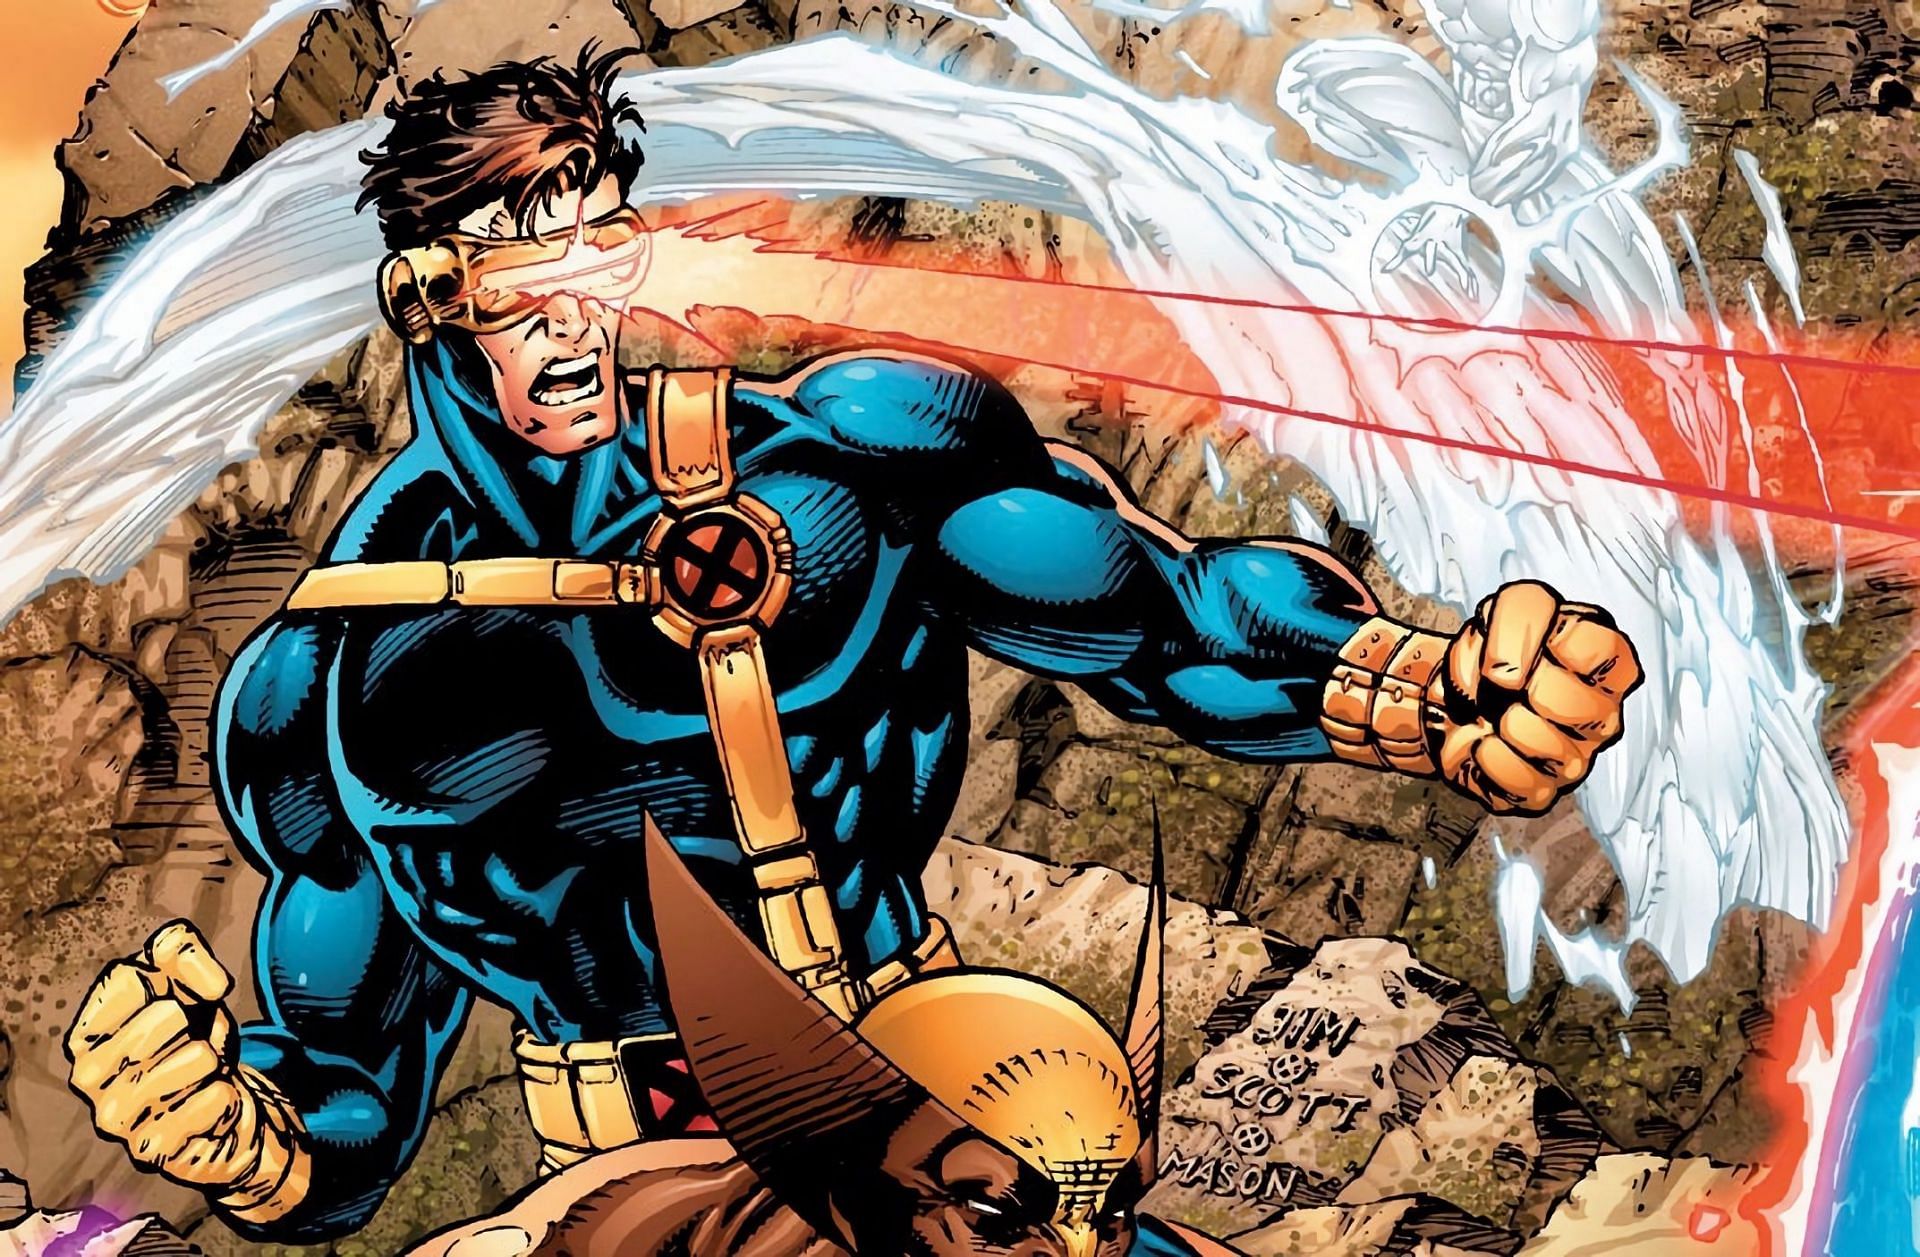 Cyclops (Image via Marvel Comics)